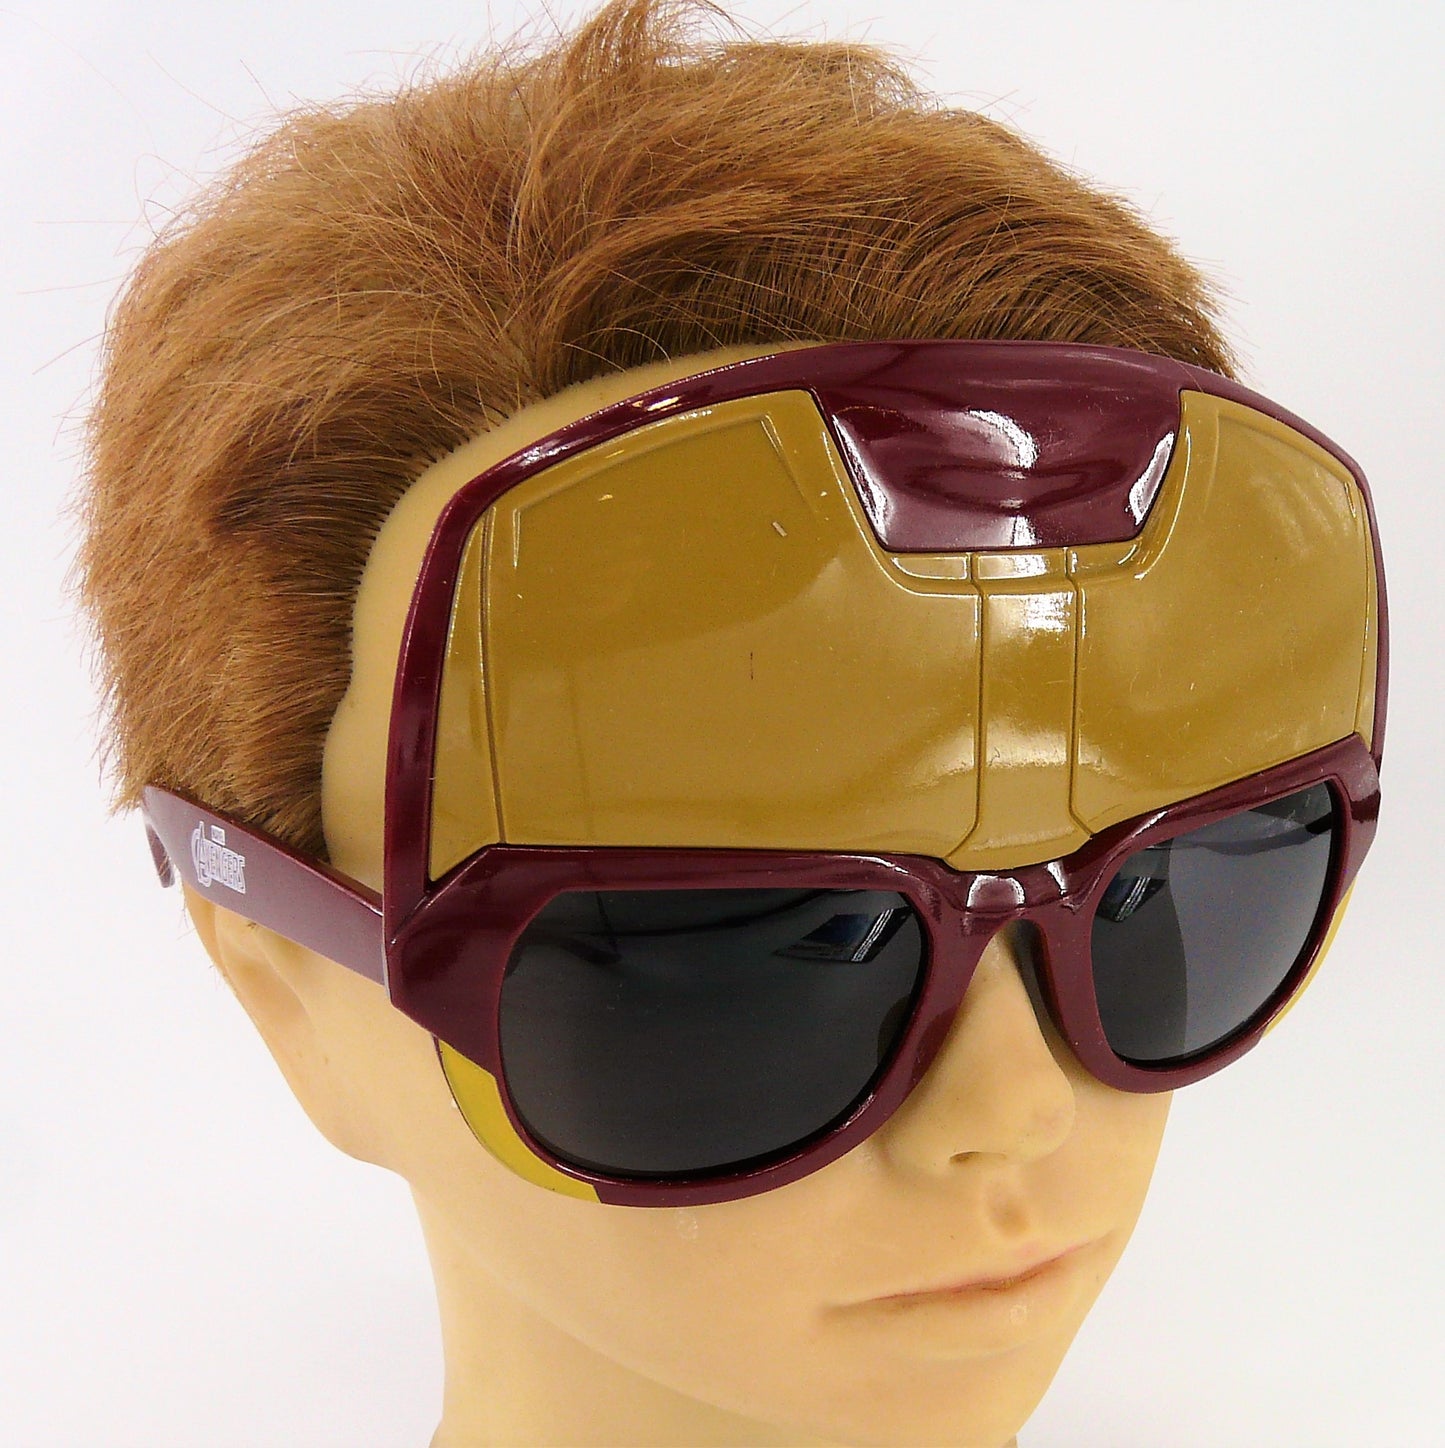 Marvel Avengers Iron Man Children's Novelty Sunglasses